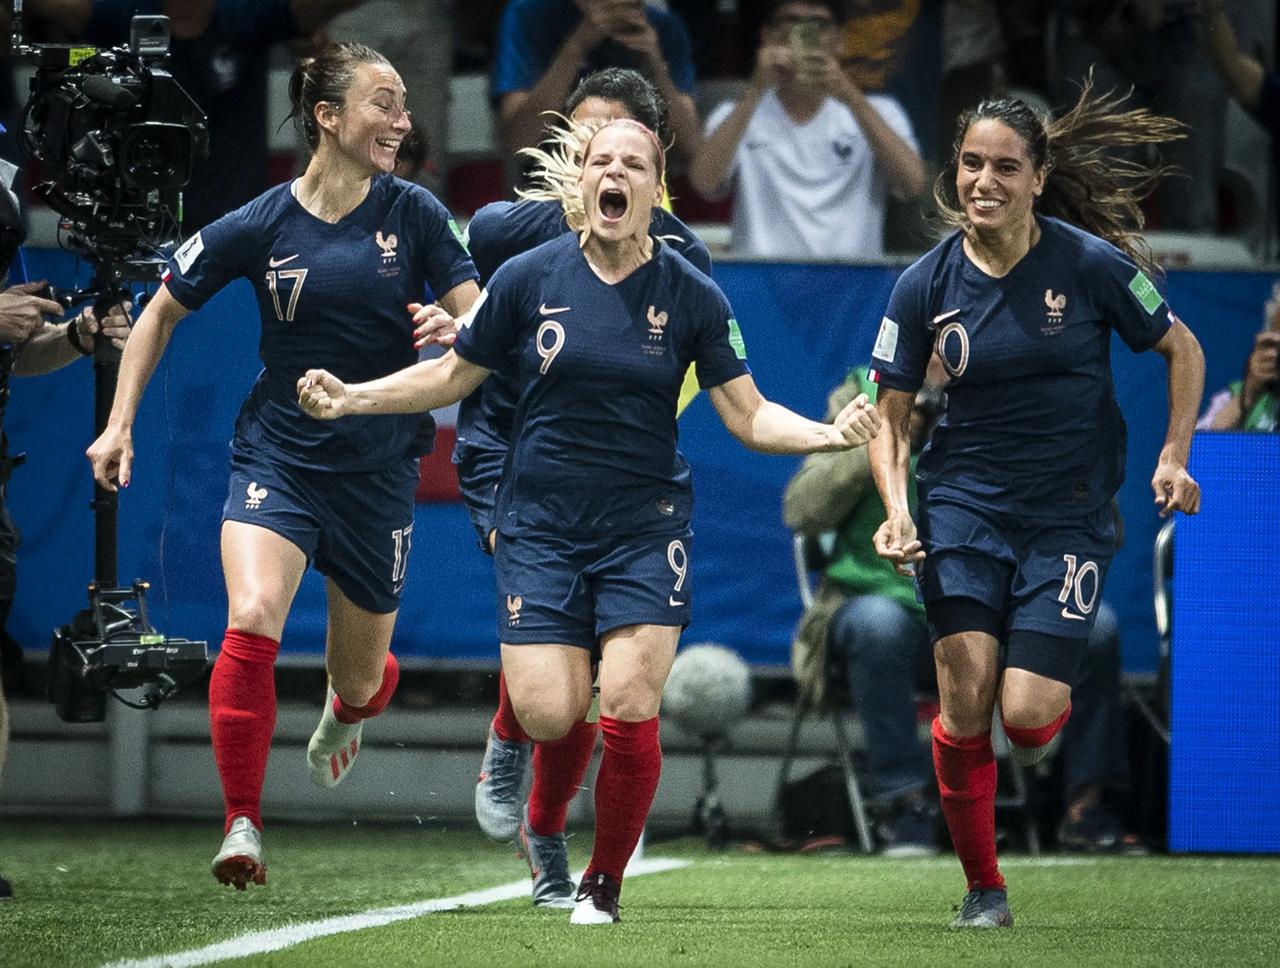 女足世界杯32强巡礼之三挪威队
是世界女足的传统强队。在1991年的首届女足世界(3)